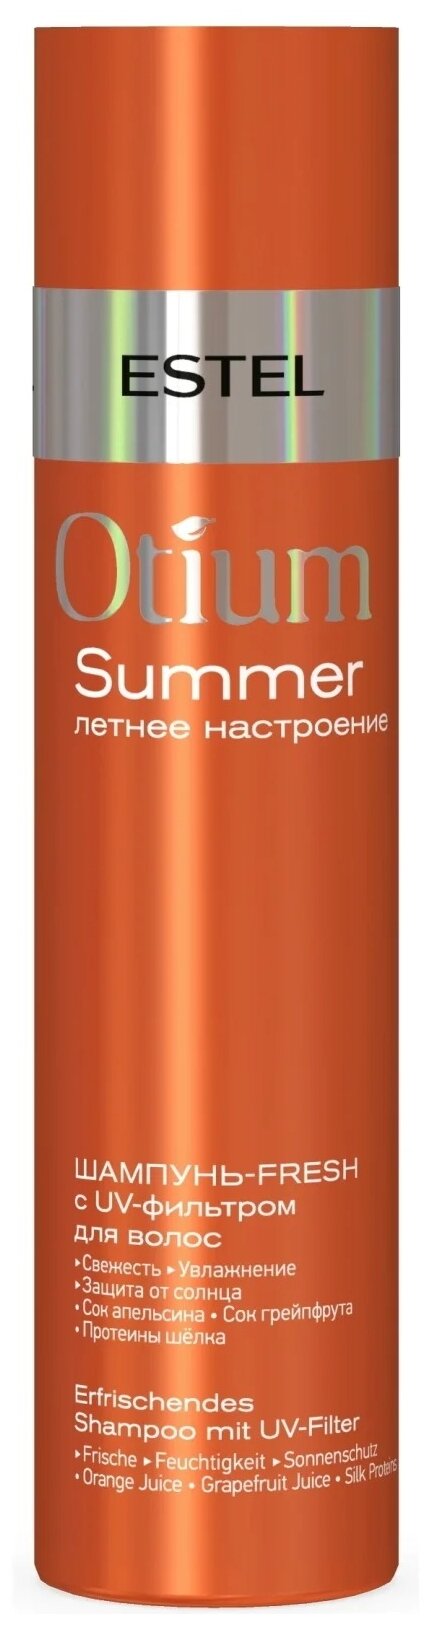 Шампунь-fresh с UV-фильтром для волос / OTIUM SUMMER 250 мл